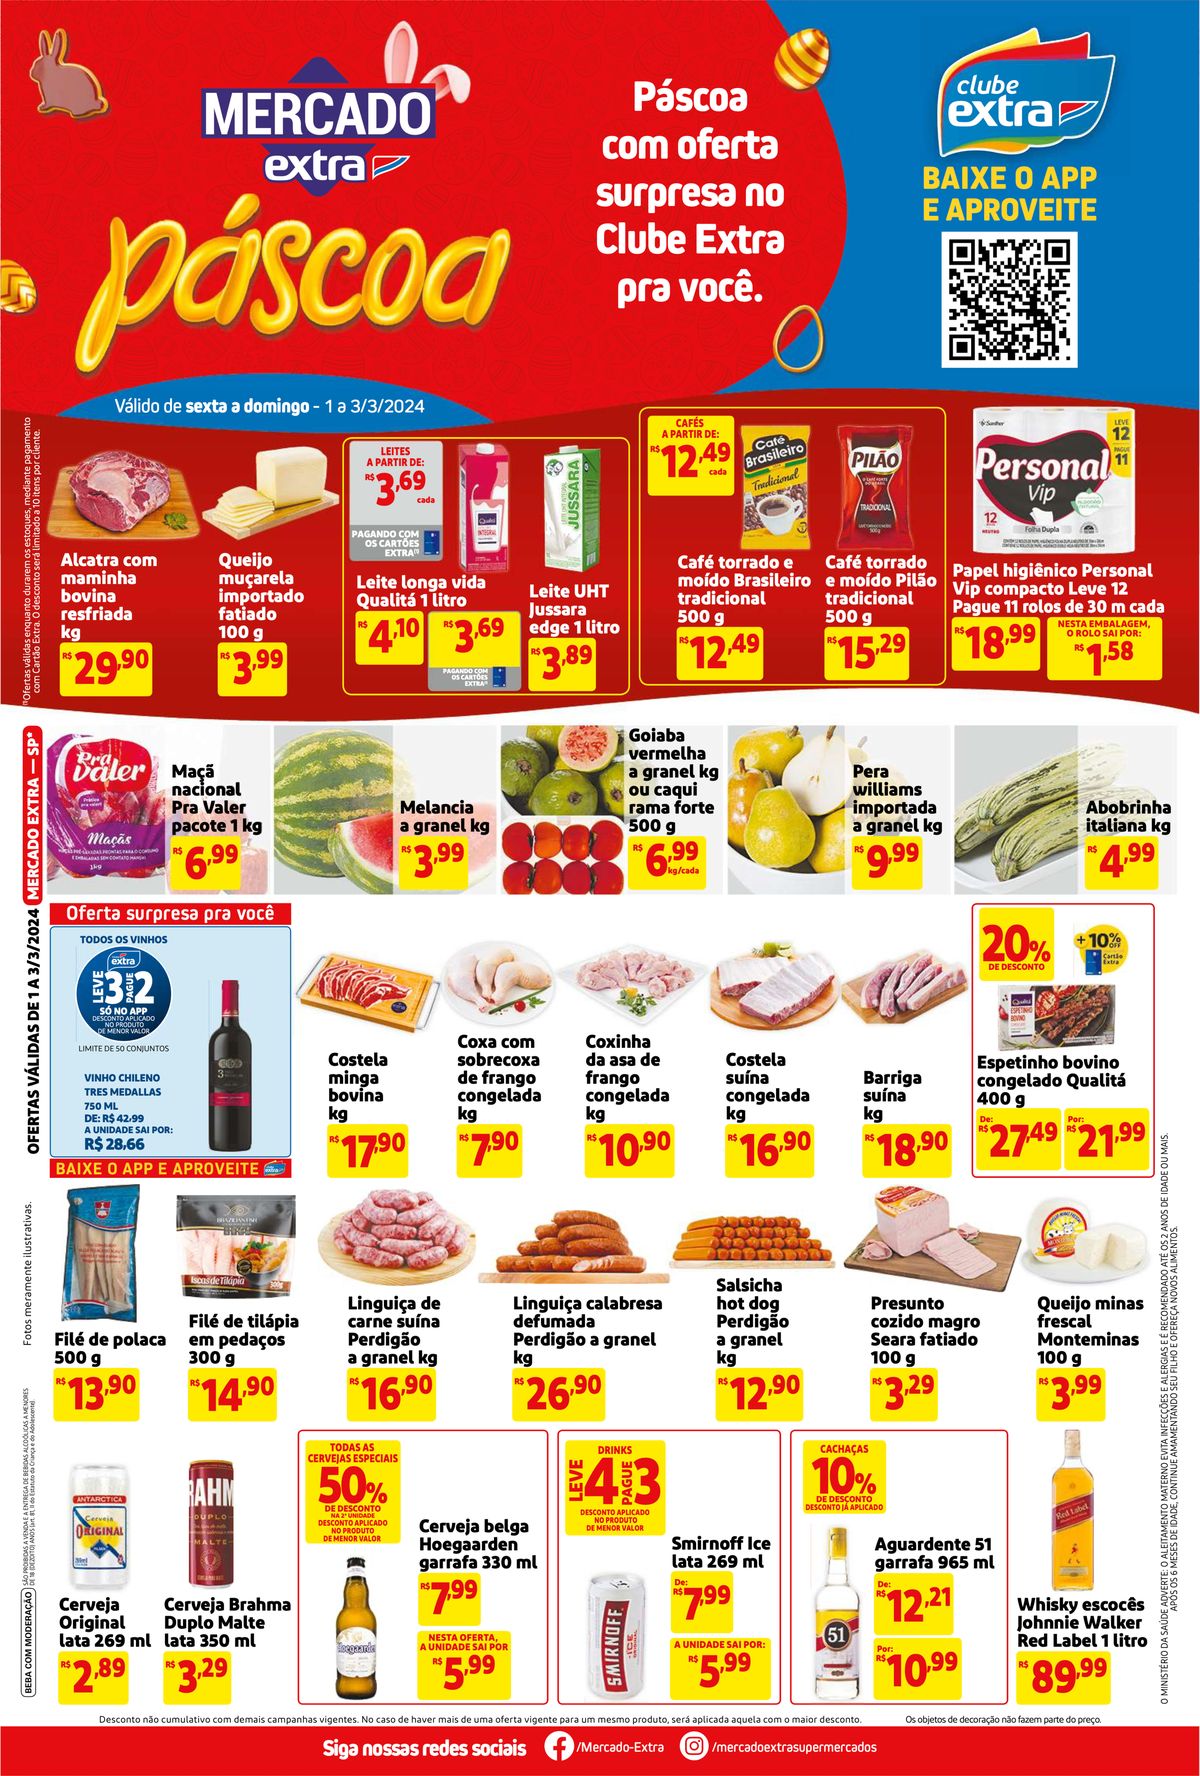 Promoção de frutas e carnes no Mercado Extra, Páscoa Mercado Extra, 03-03-2024, Mercado Extra